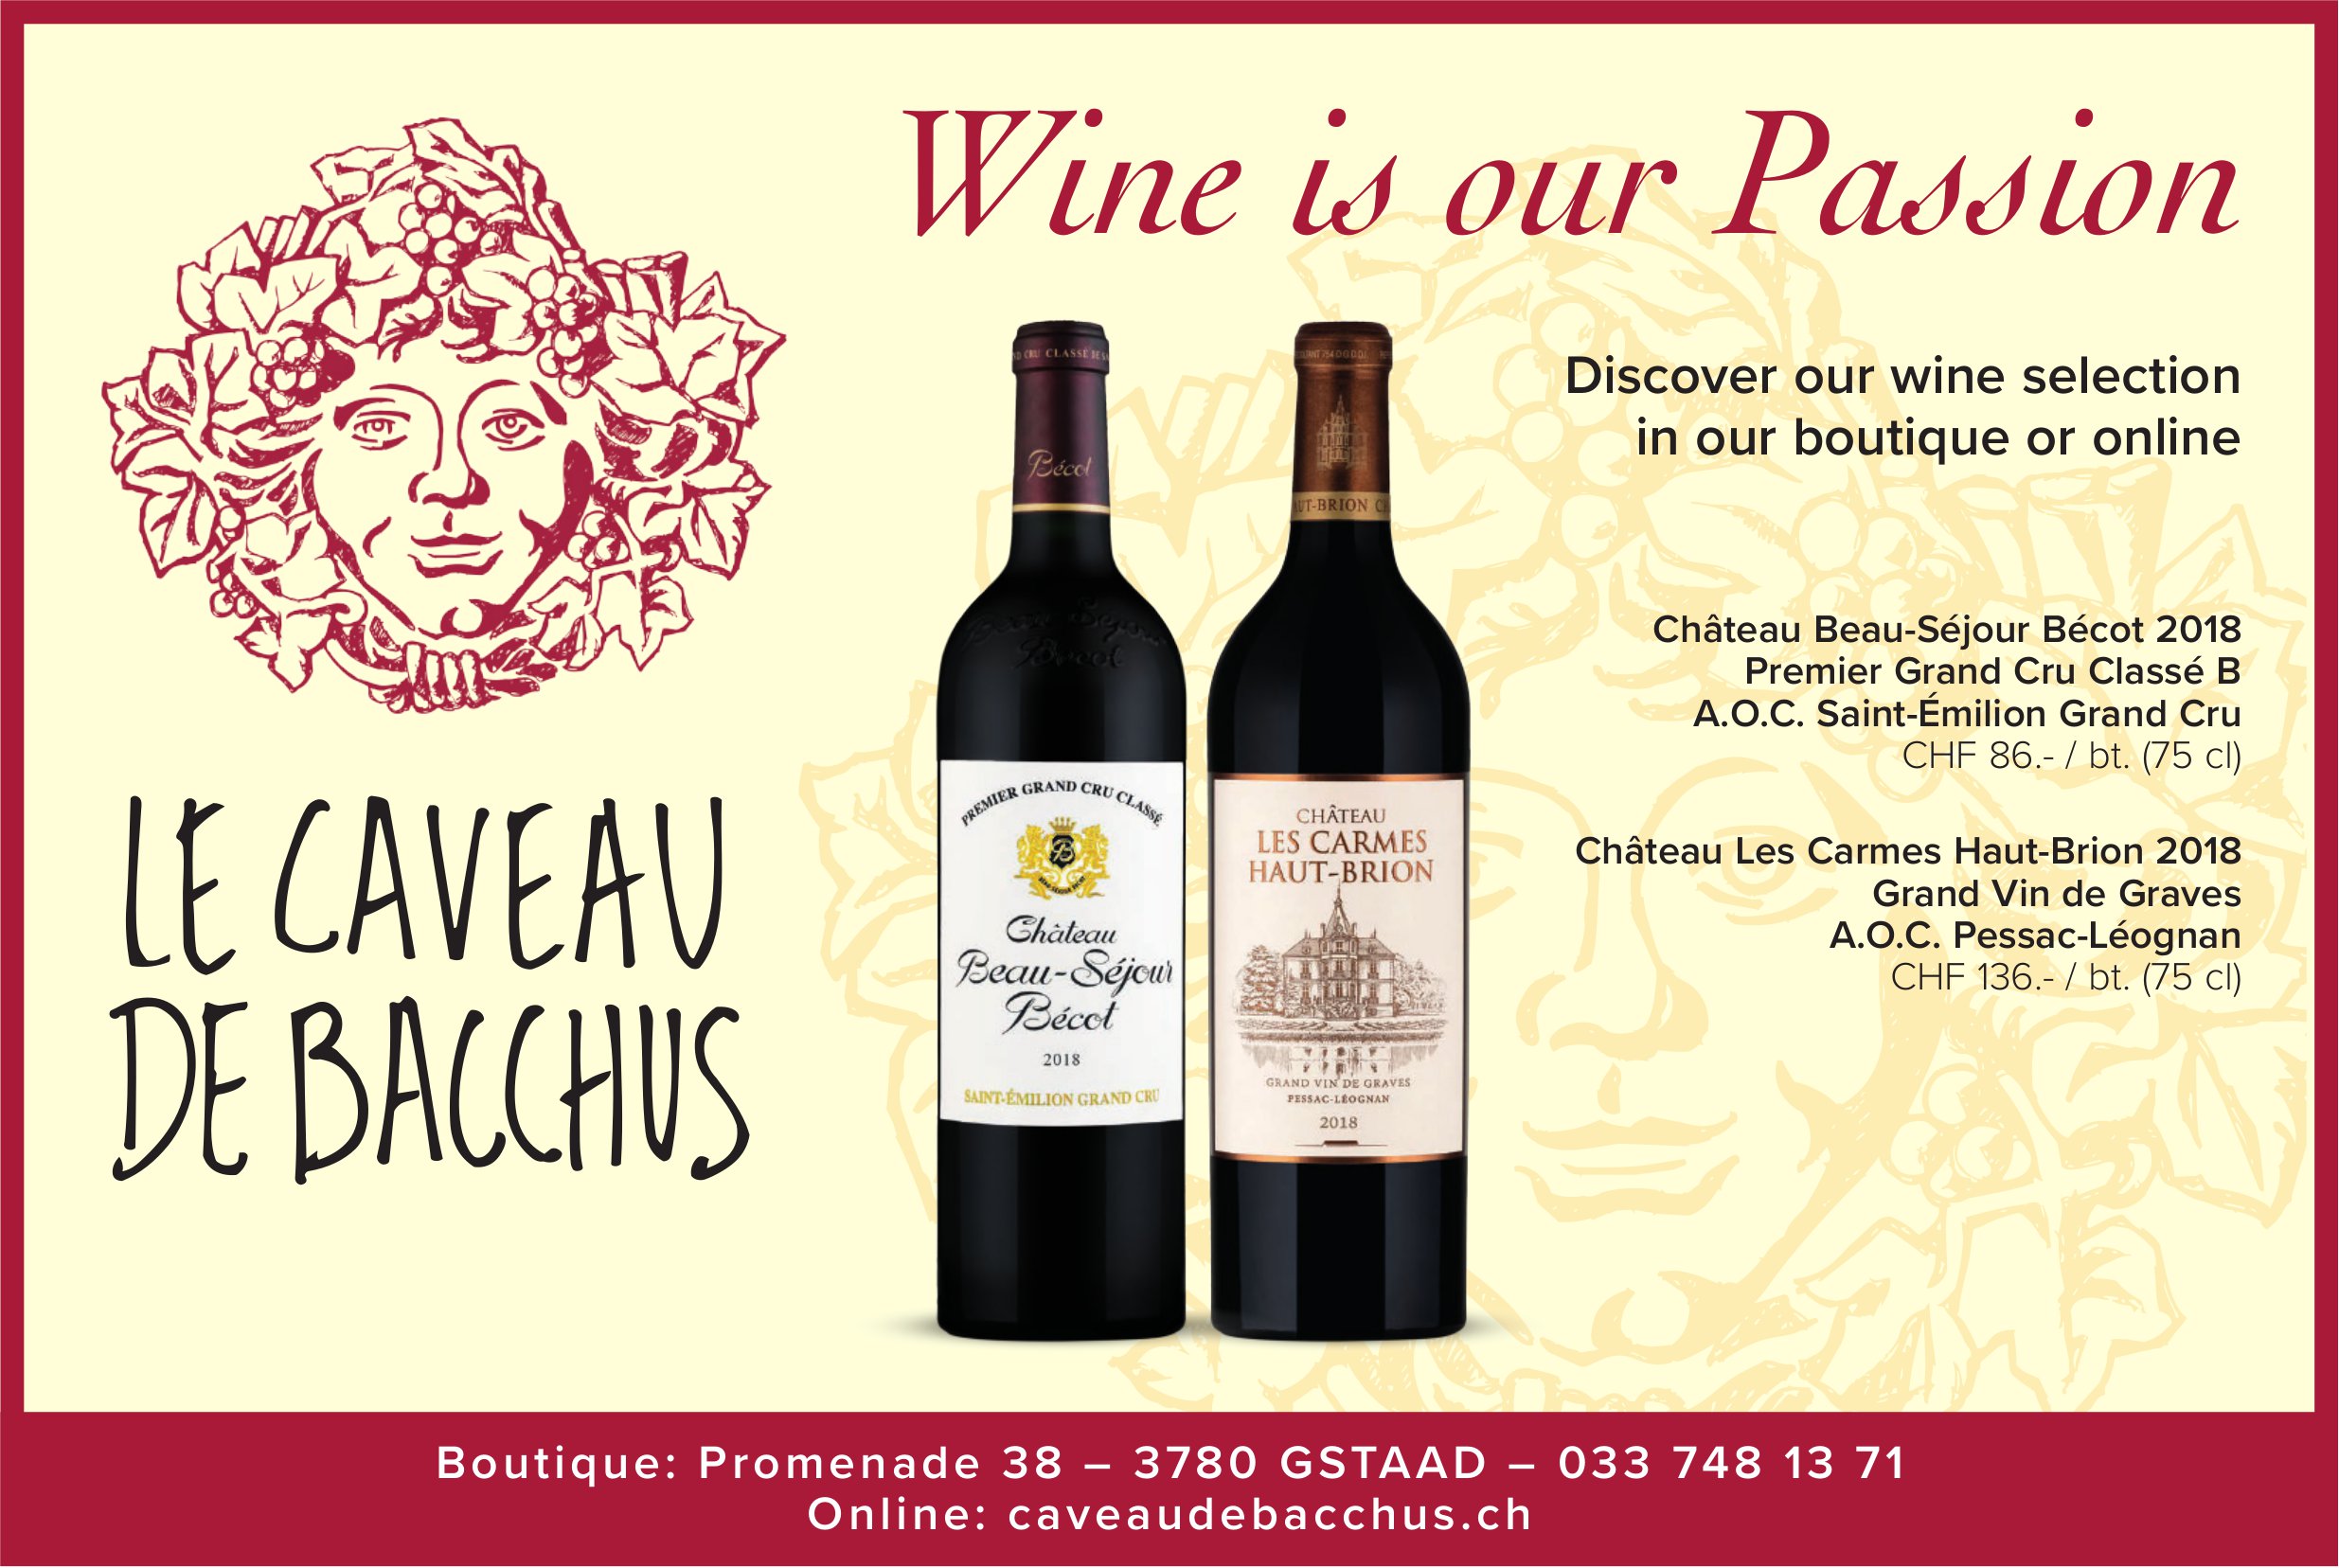 Caveau de Bacchus, Gstaad - Wine is our Passion